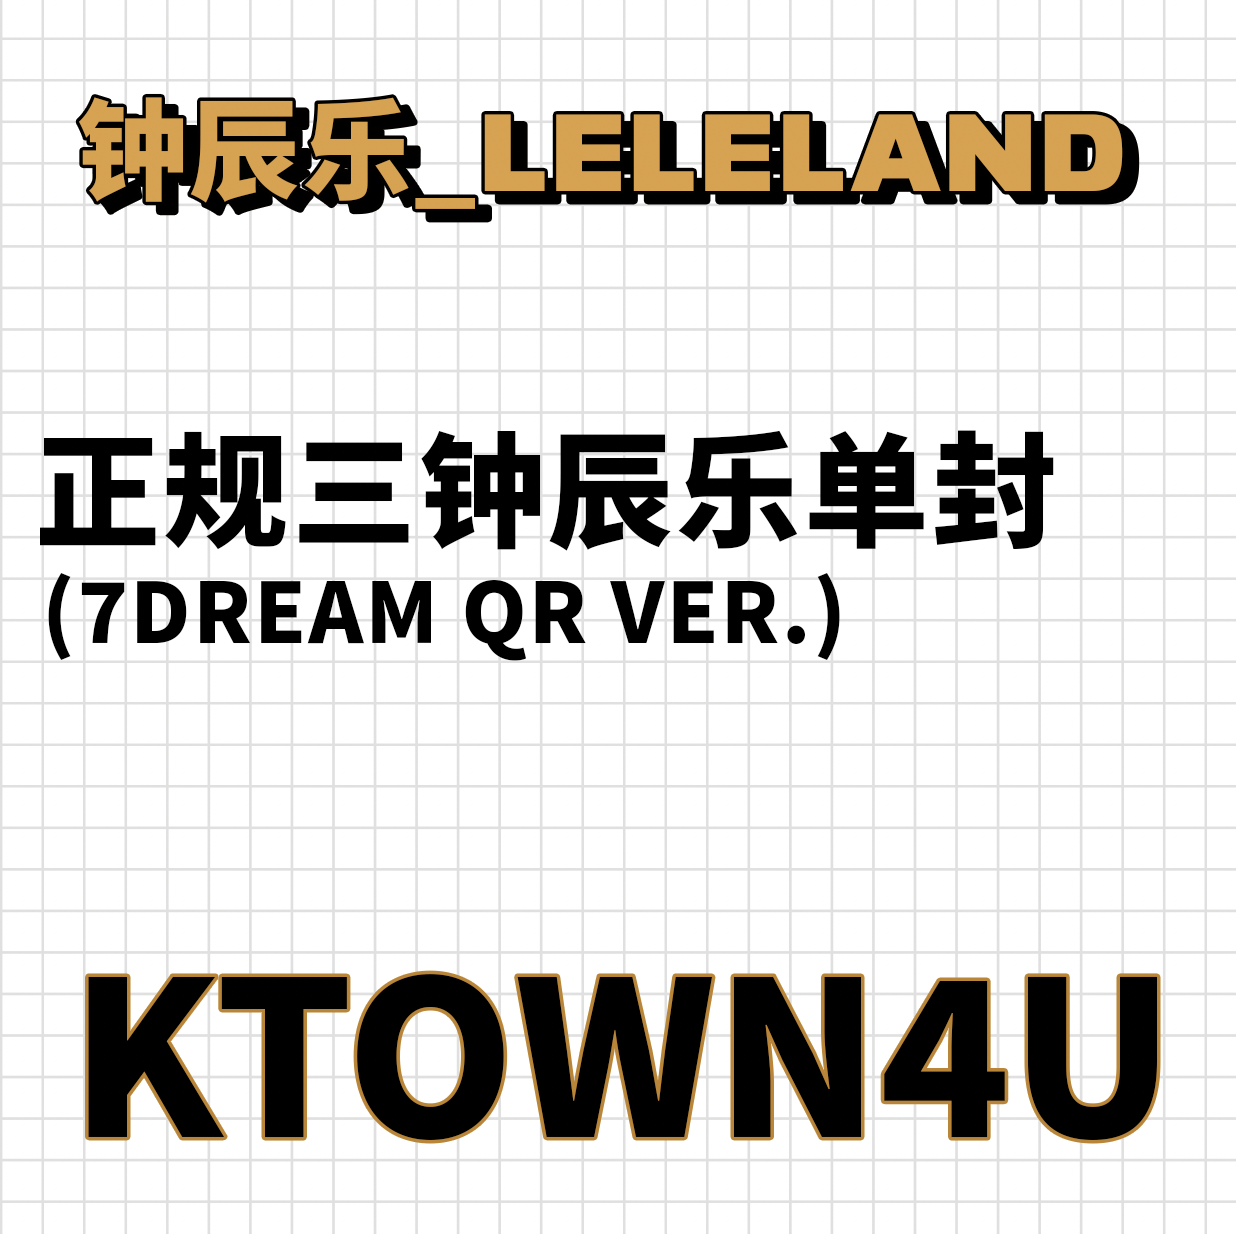 【七站联合】NCT DREAM - 正规3辑 [ISTJ] (7DREAM QR Ver.) (Smart Album) (随机版本)_钟辰乐吧_ChenLeBar